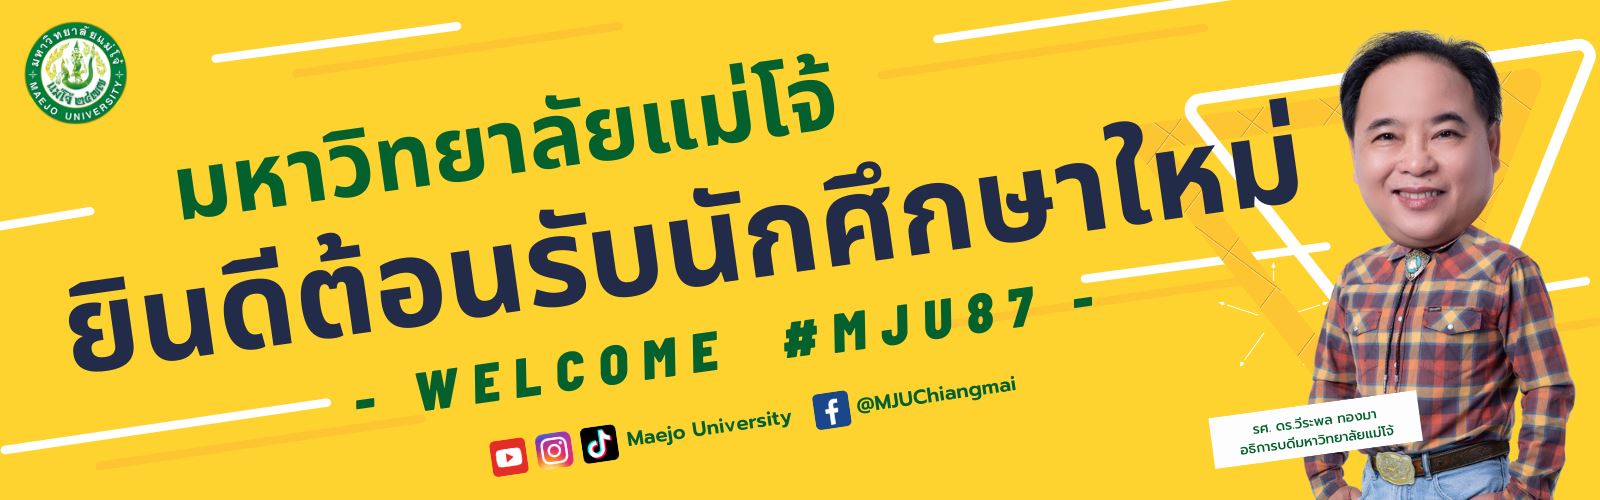 มหาวิทยาลัยแม่โจ้ ยินดีต้อนรับนักศึกษาใหม่ #MJU87